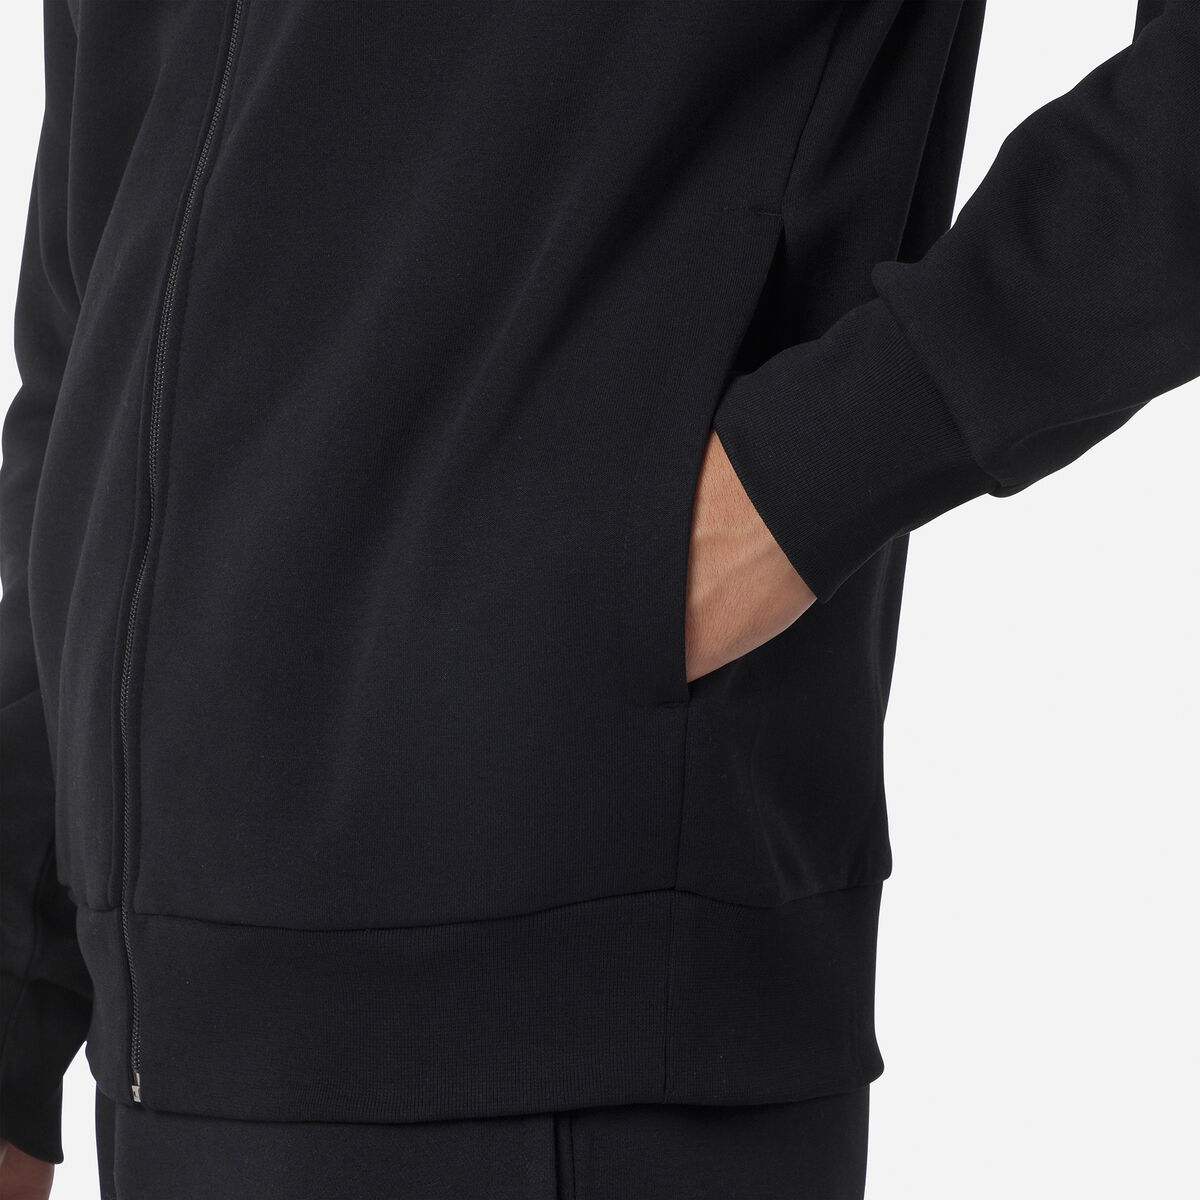 Rossignol Herrensweatshirt aus Baumwolle mit Kapuze, Logo und durchgehendem Reißverschluss black